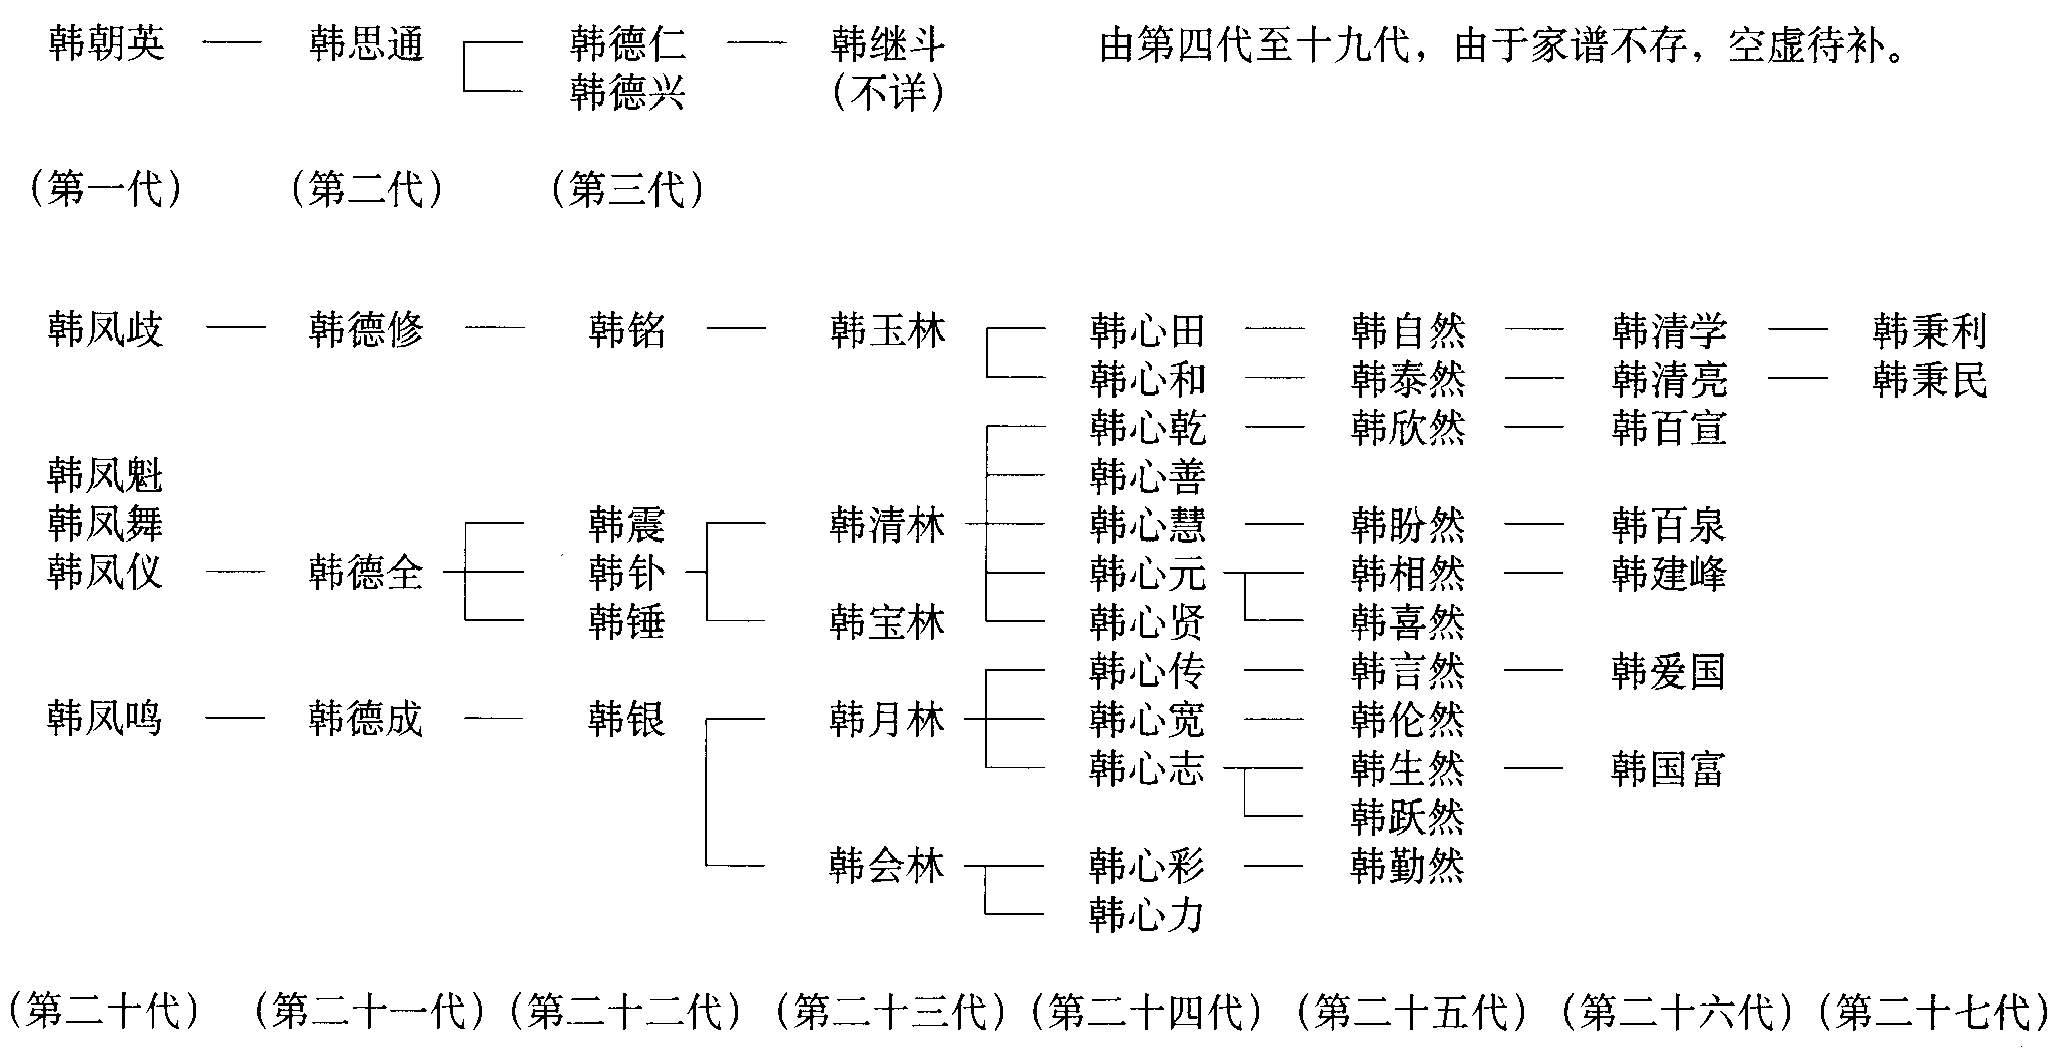 滑县李方屯年画韩氏艺人传承谱系